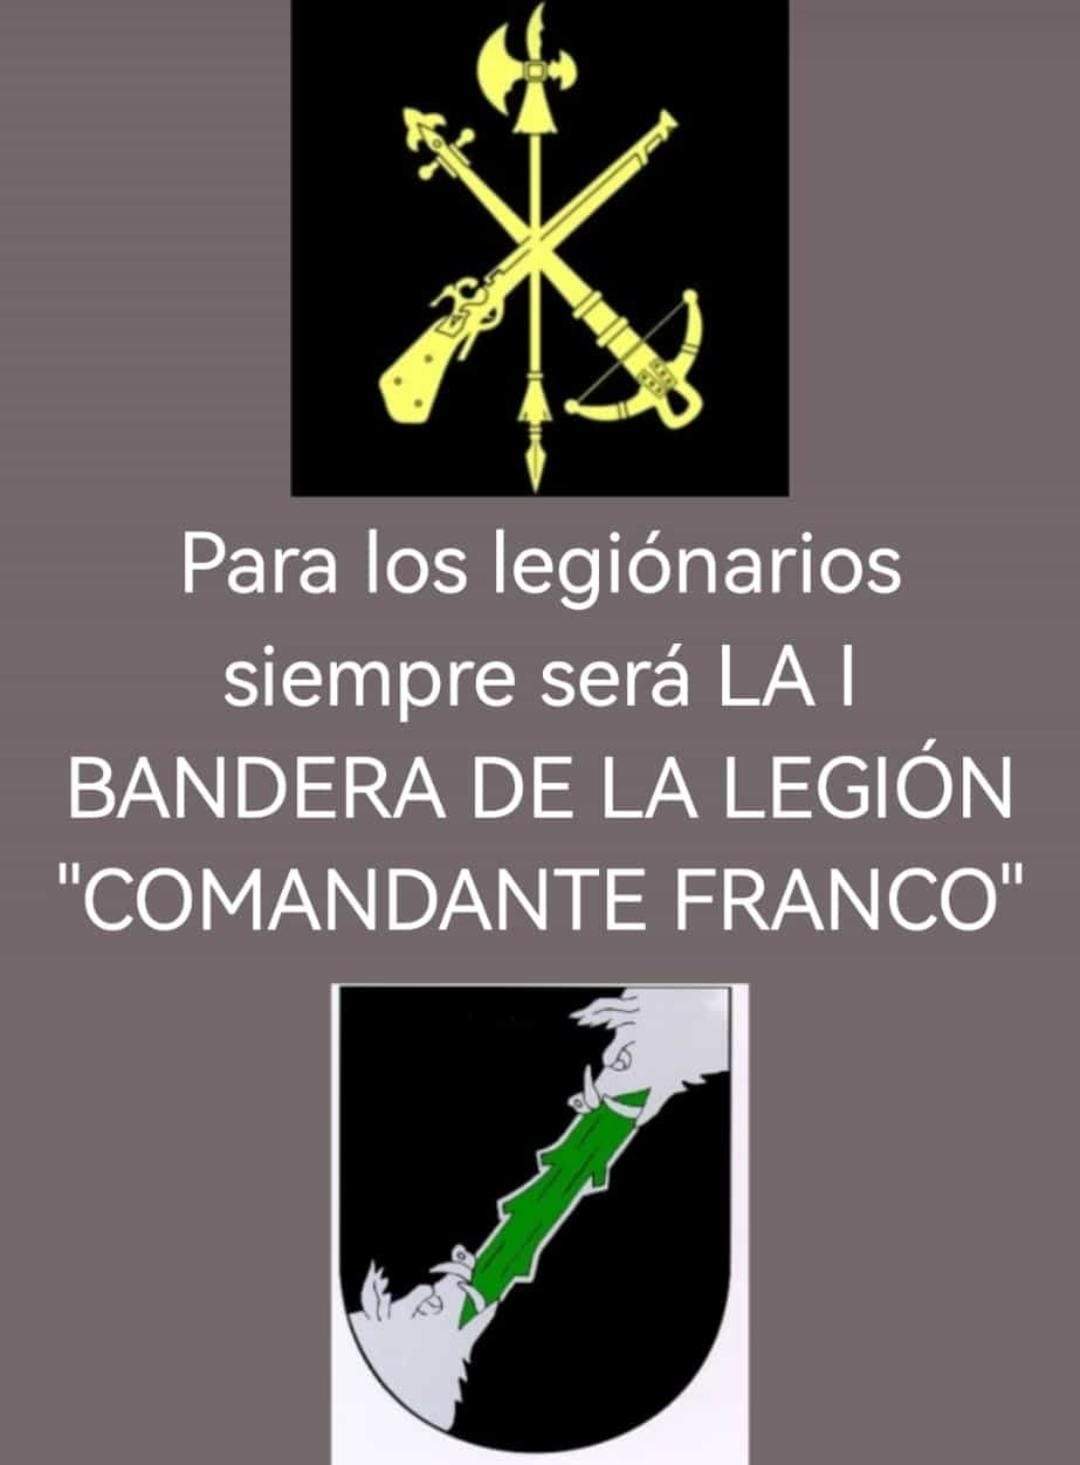 Legión Española en Okdiario